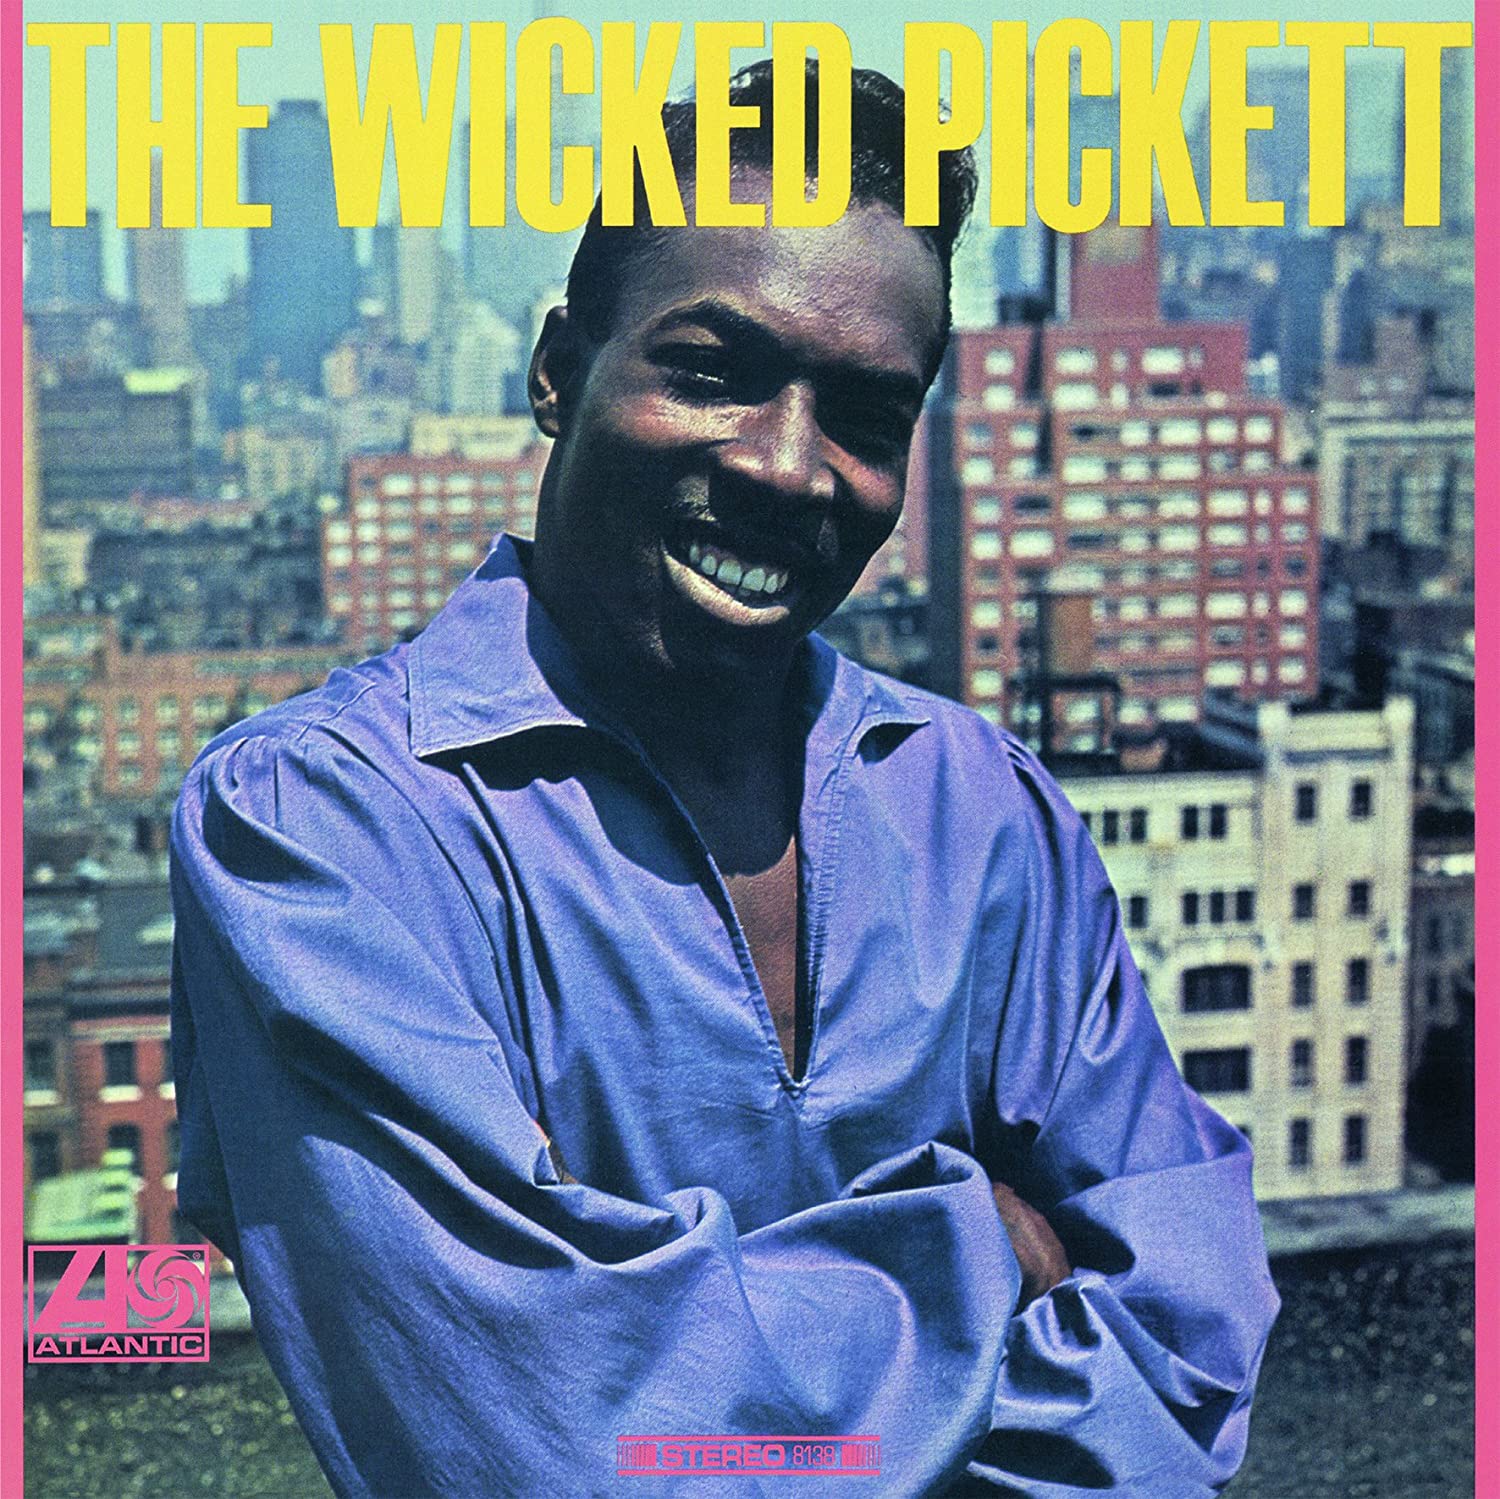 Wilson Pickett - The Wicked Pickett (Vinyl LP)